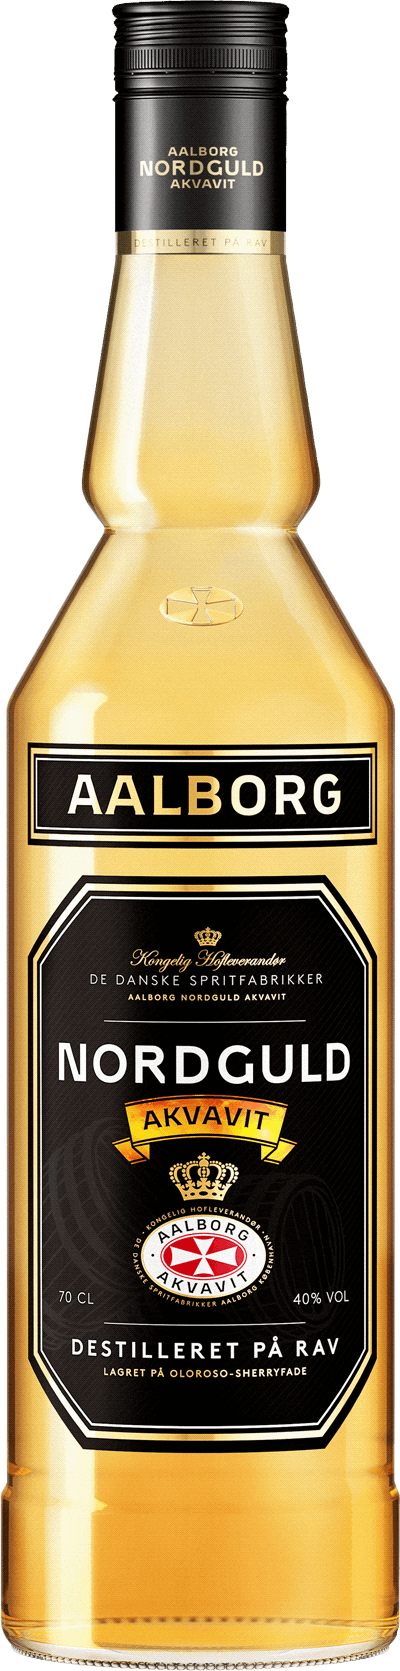 Produktbild för Aalborg Nordguld